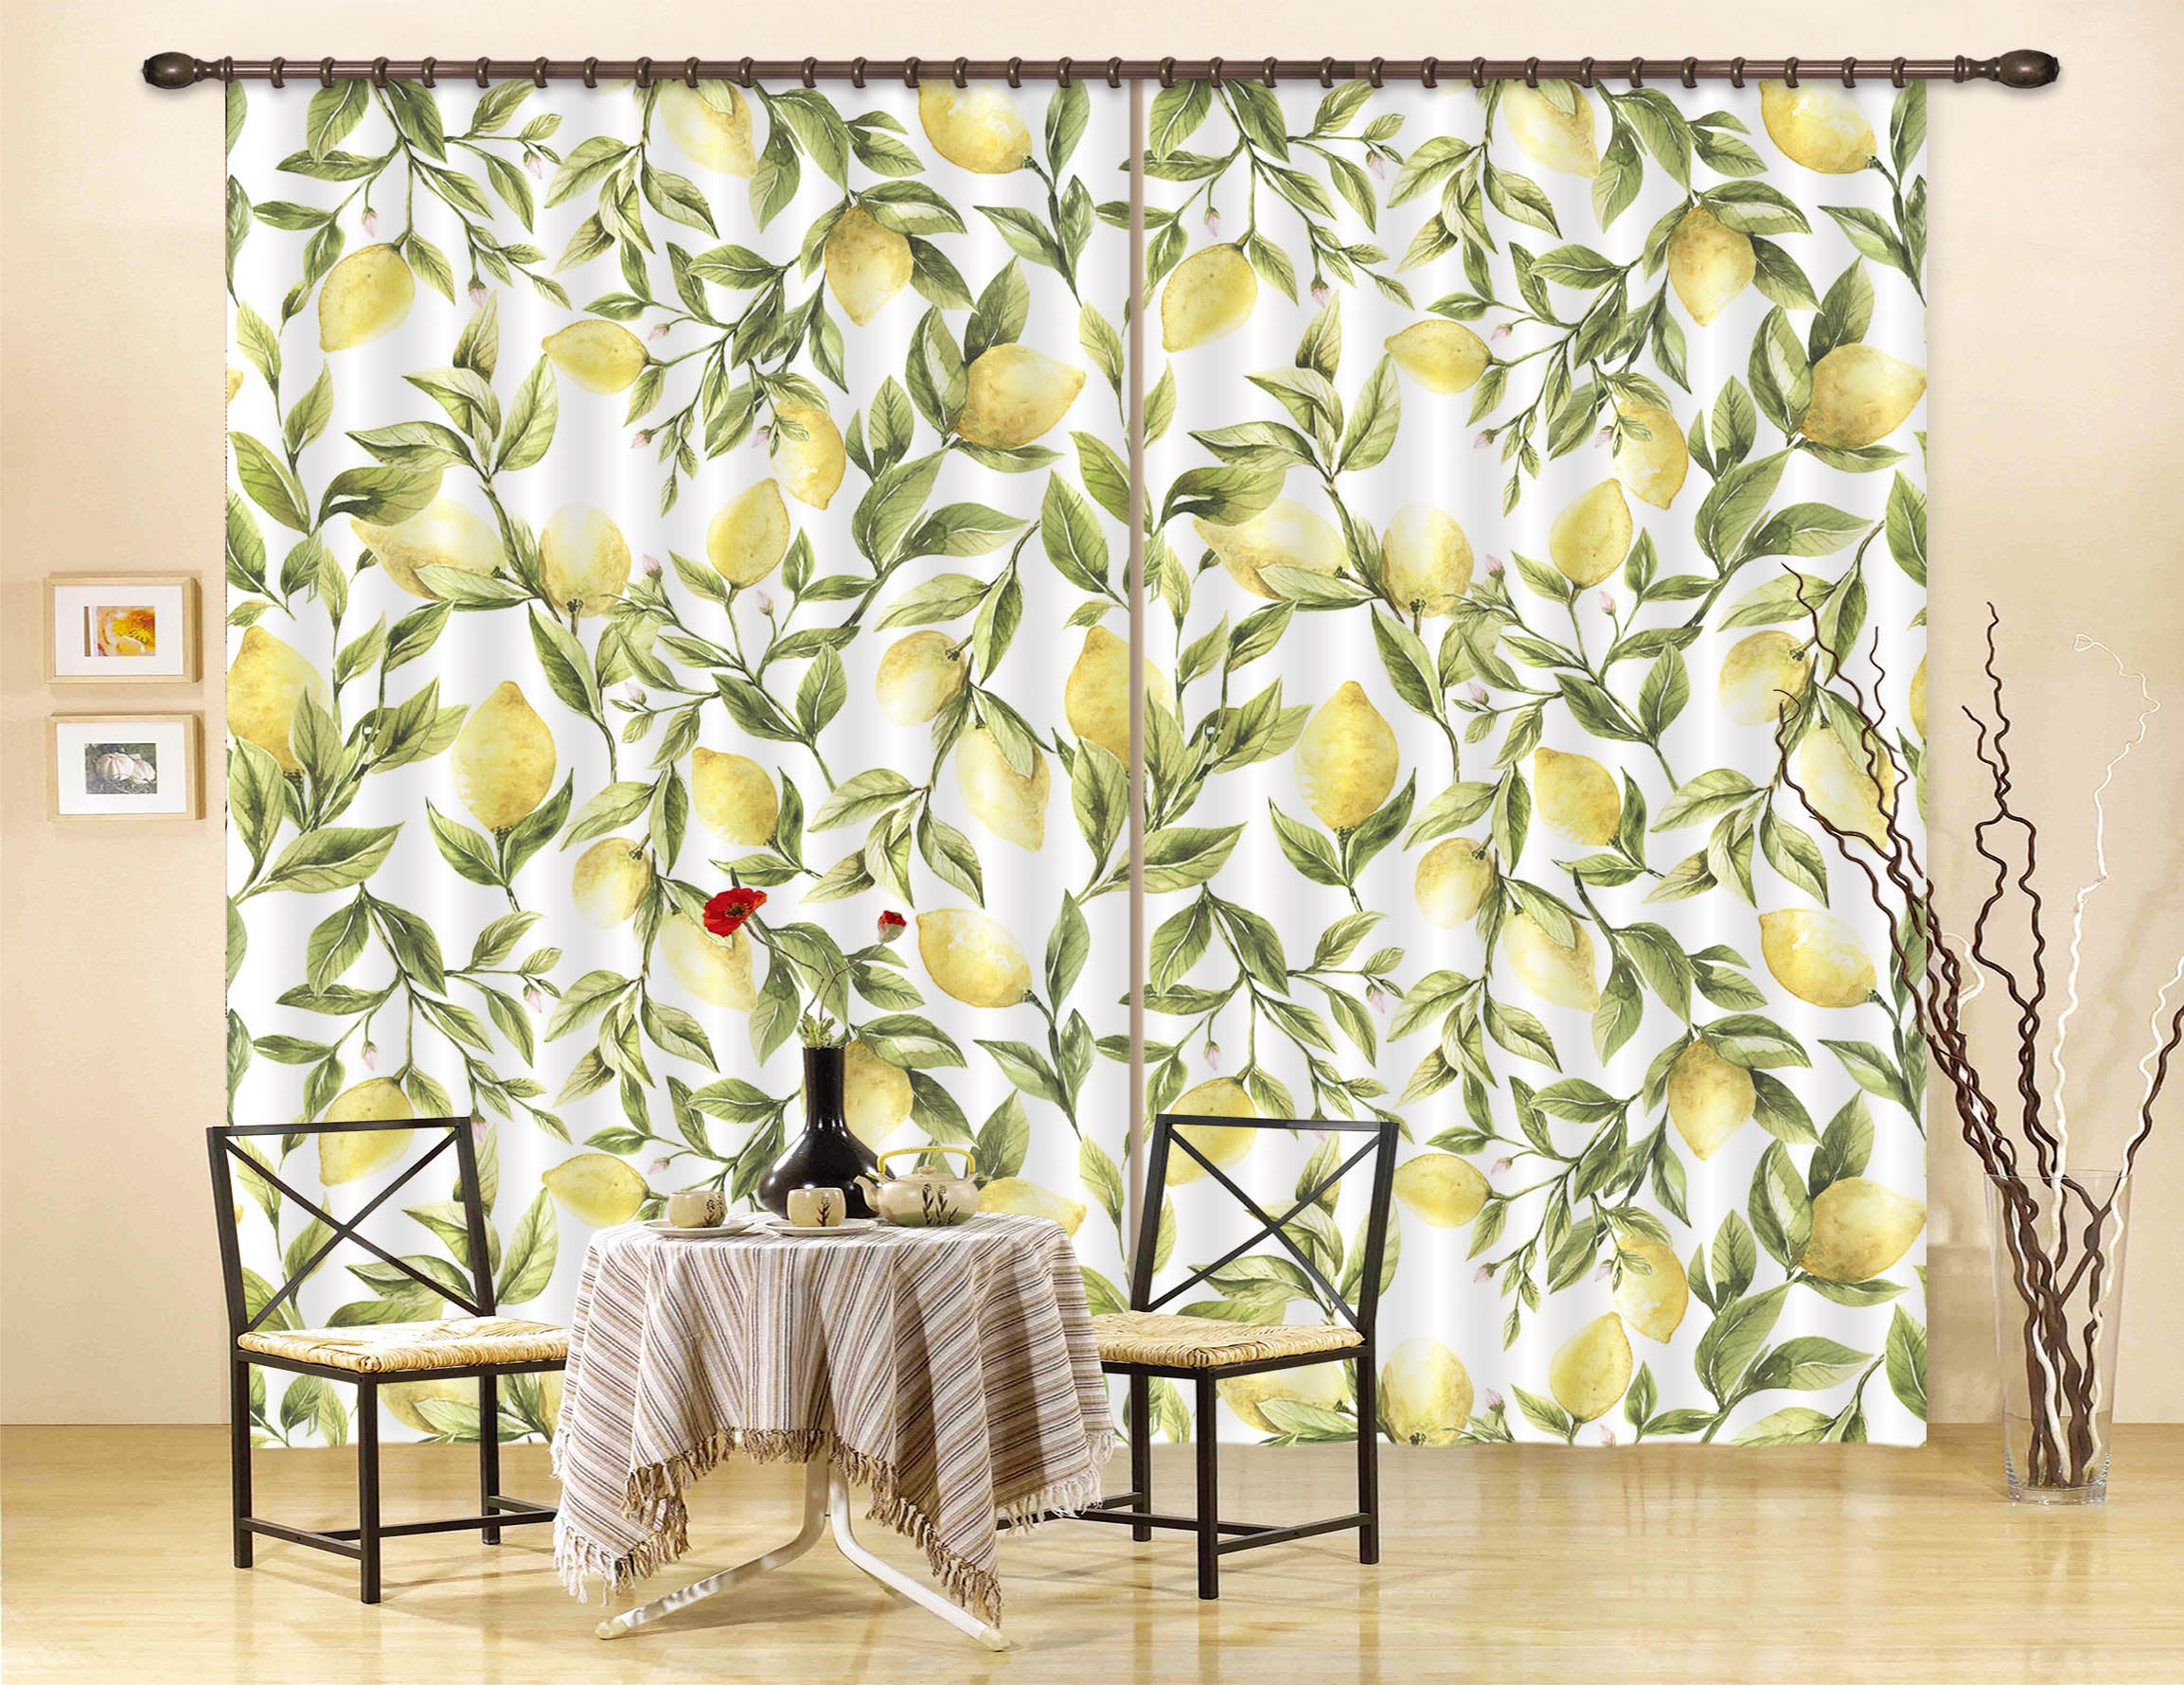 3D Fruit Lemon 227 Uta Naumann Curtain Curtains Drapes